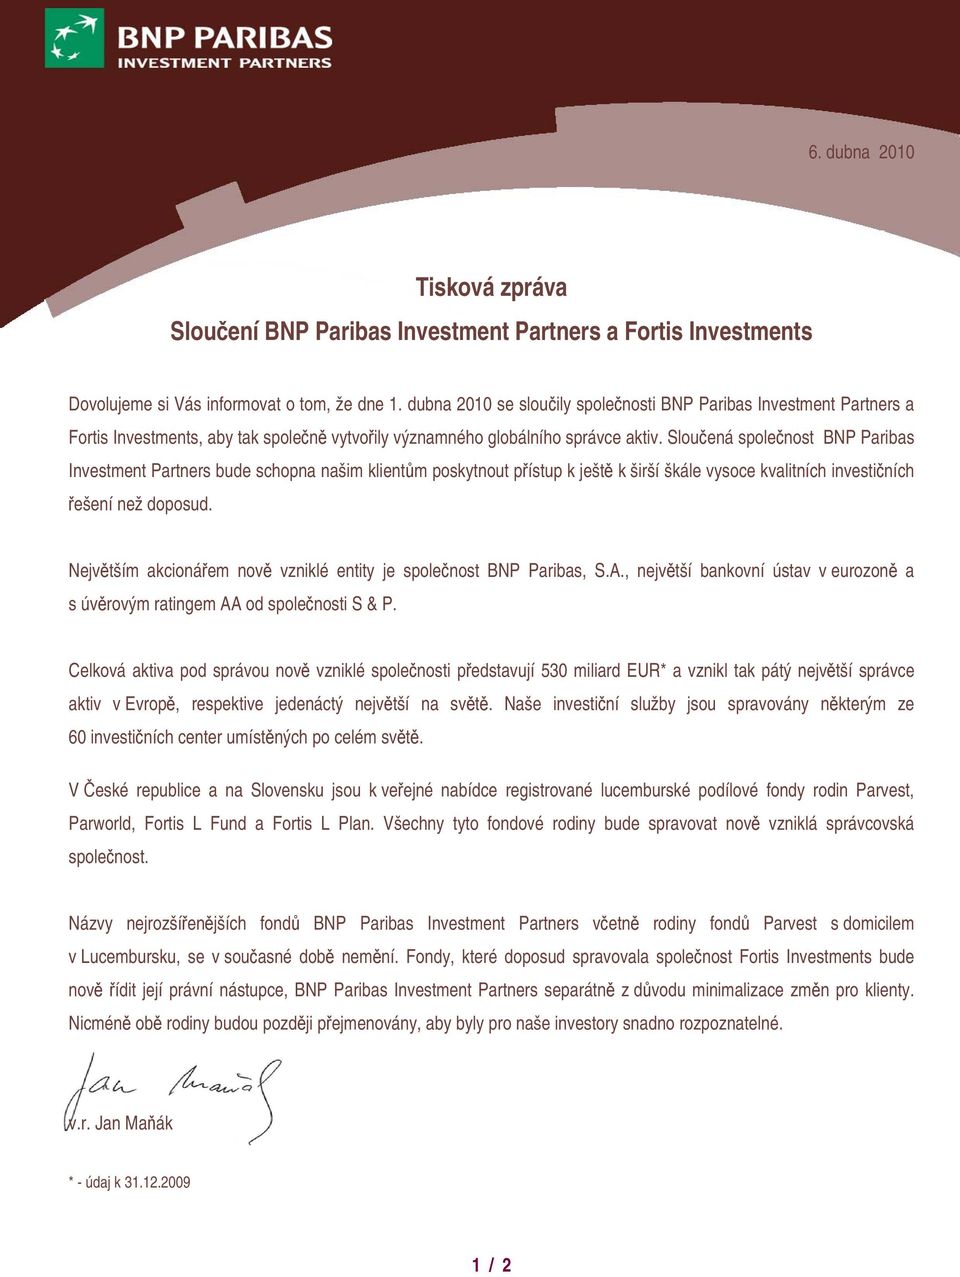 Sloučená společnost BNP Paribas Investment Partners bude schopna našim klientům poskytnout přístup k ještě k širší škále vysoce kvalitních investičních řešení než doposud.